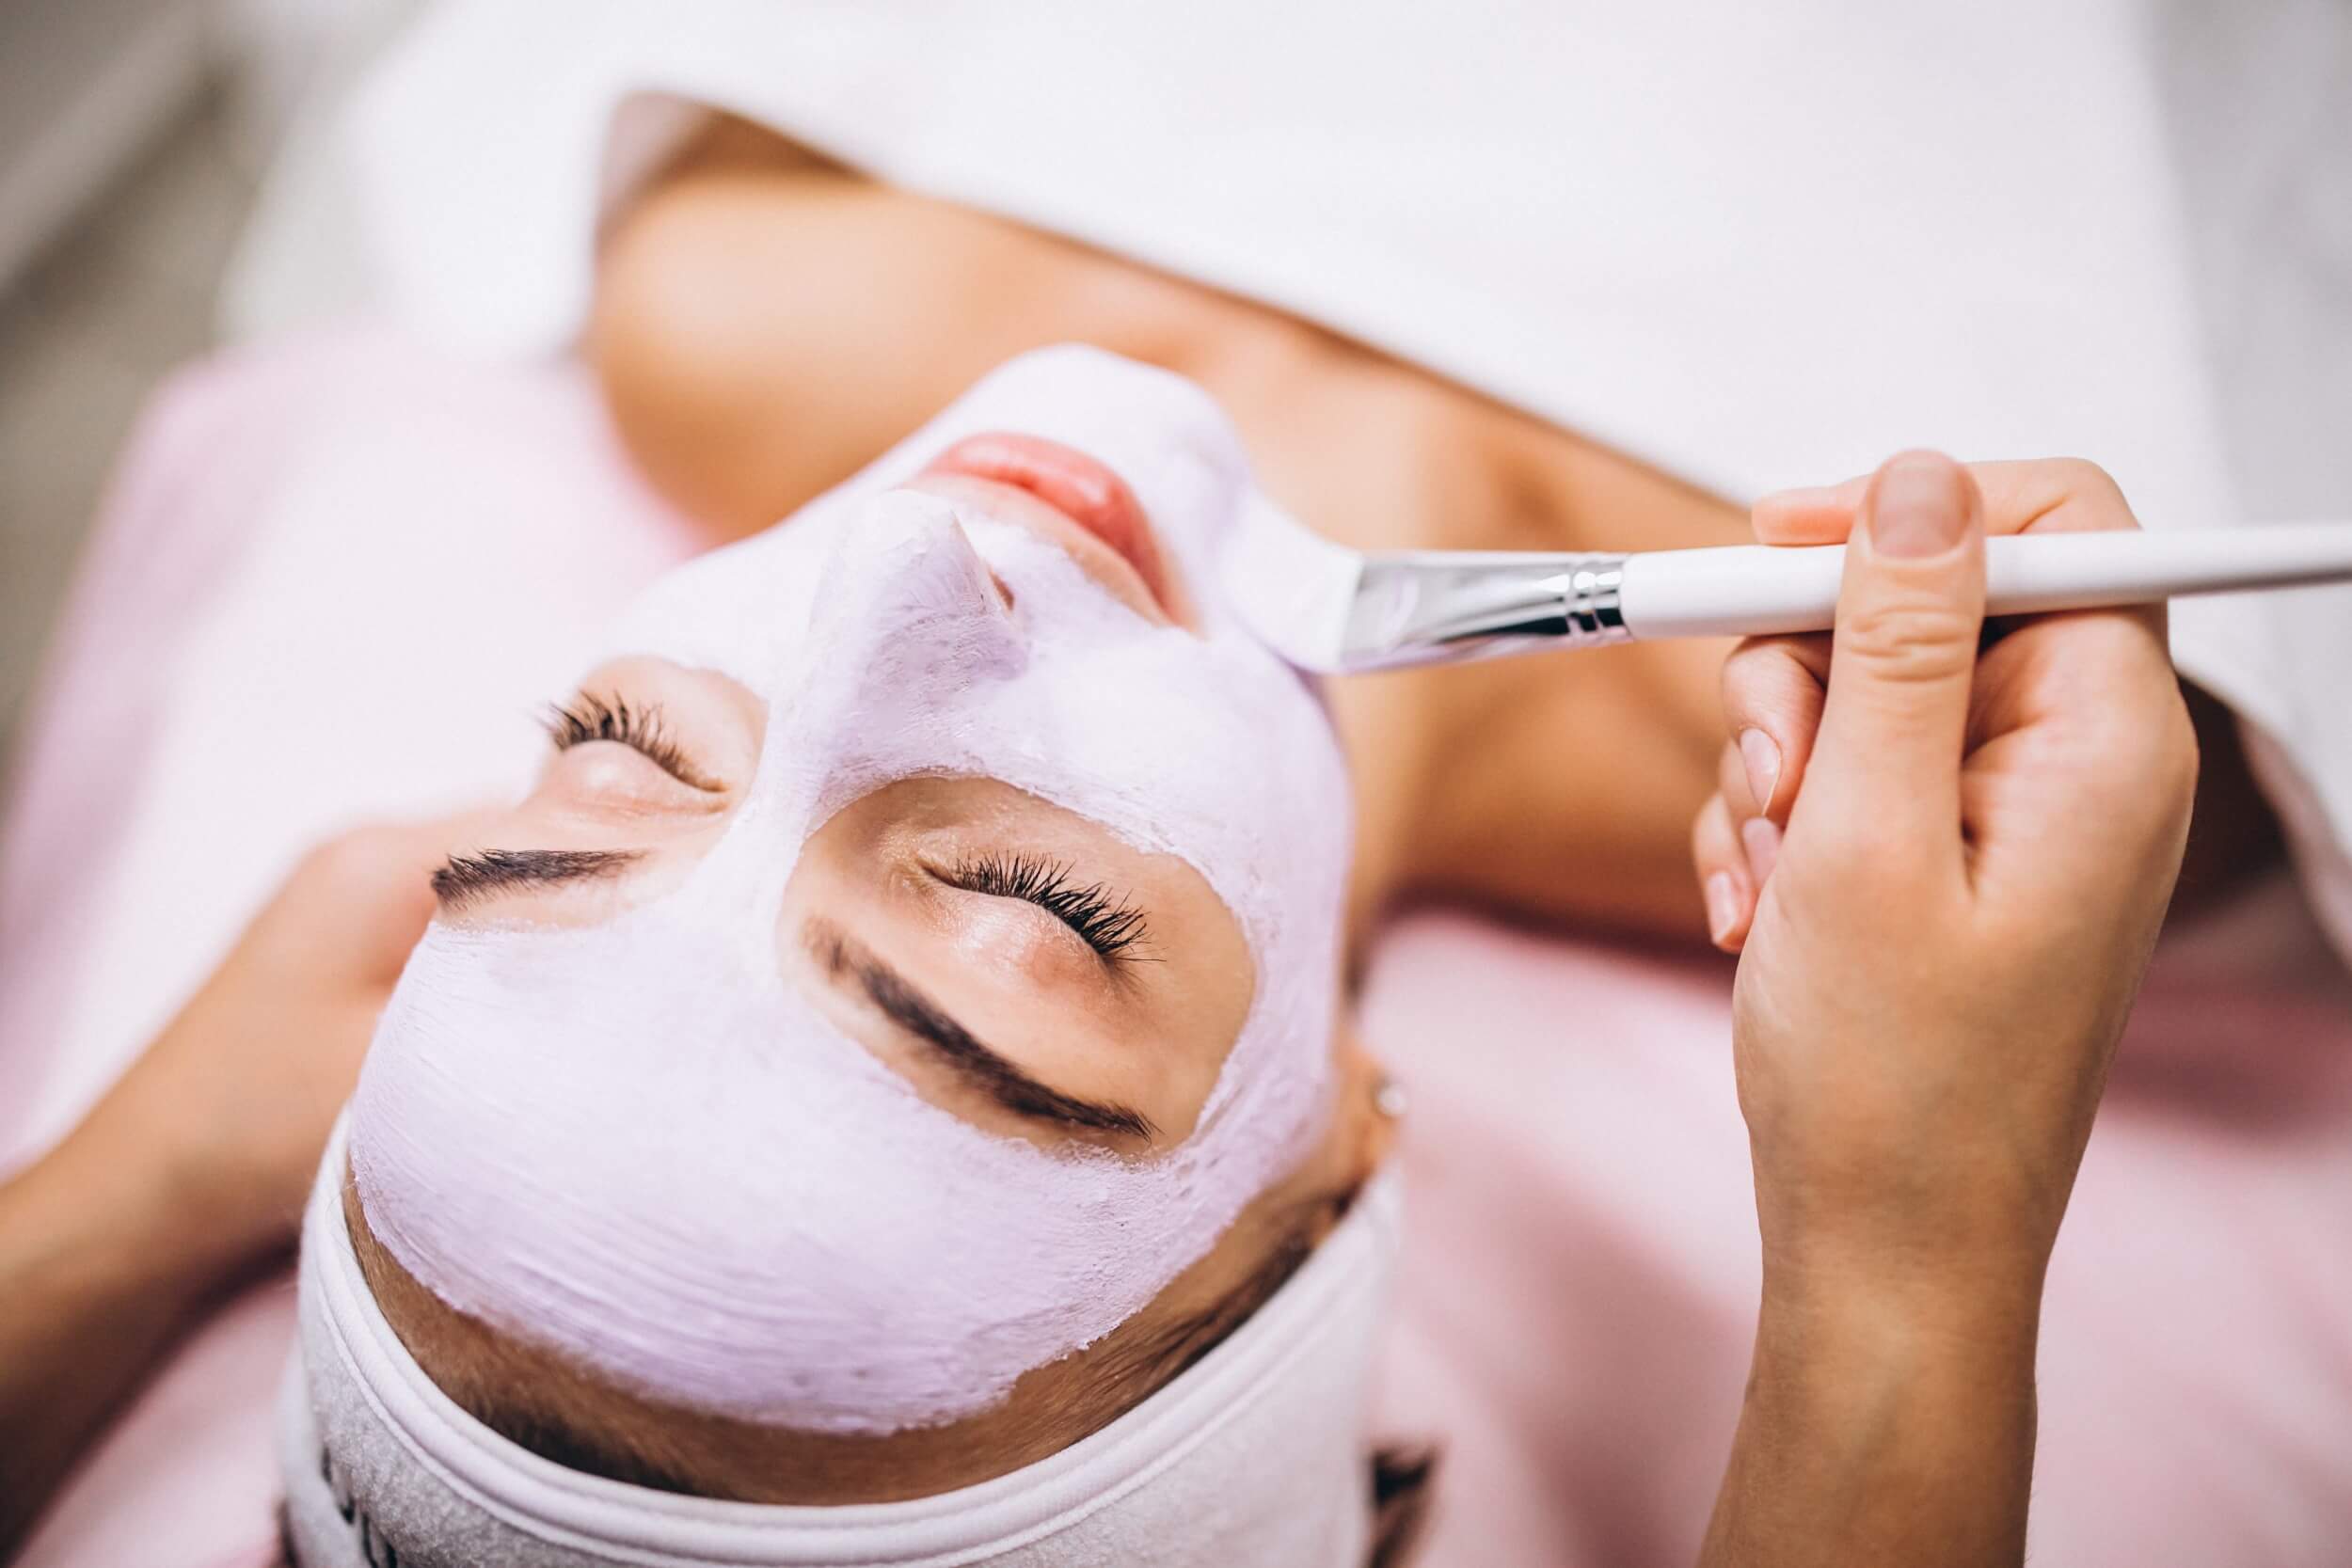 מגזין פיישל אונליין – כל מה שצריך לדעת על טיפולי פנים